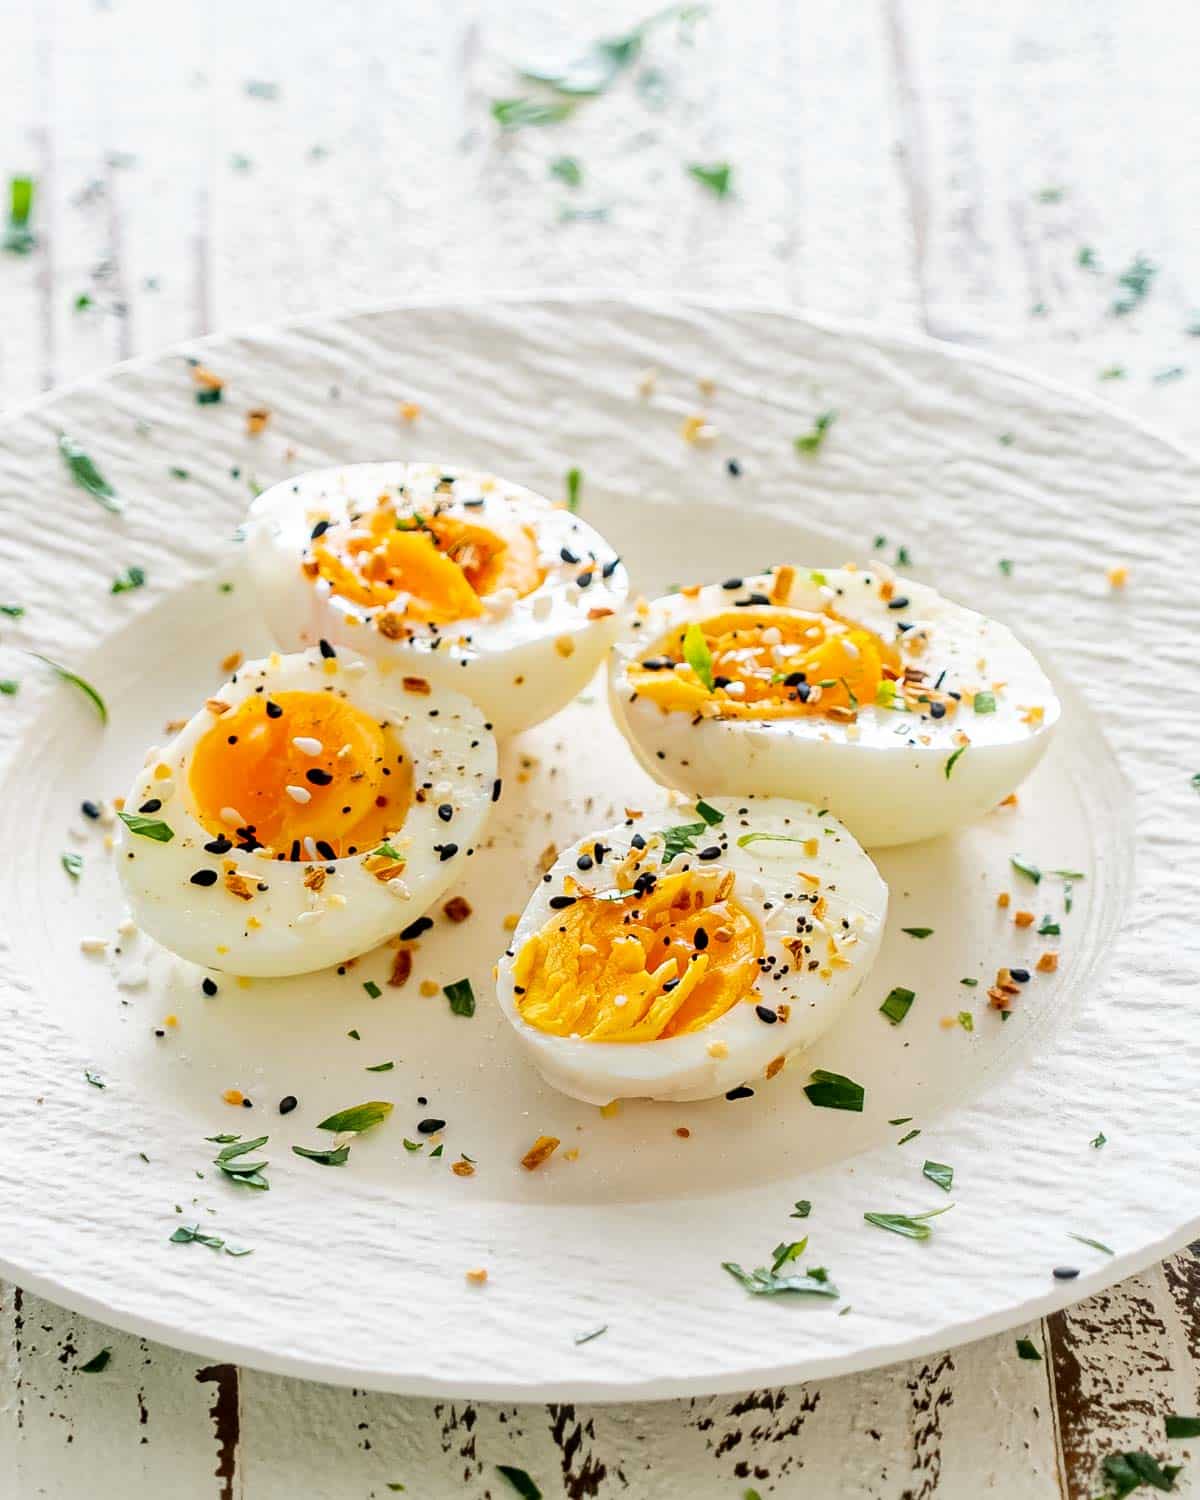 https://www.jocooks.com/wp-content/uploads/2022/04/air-fryer-hard-boiled-eggs-1-4.jpg